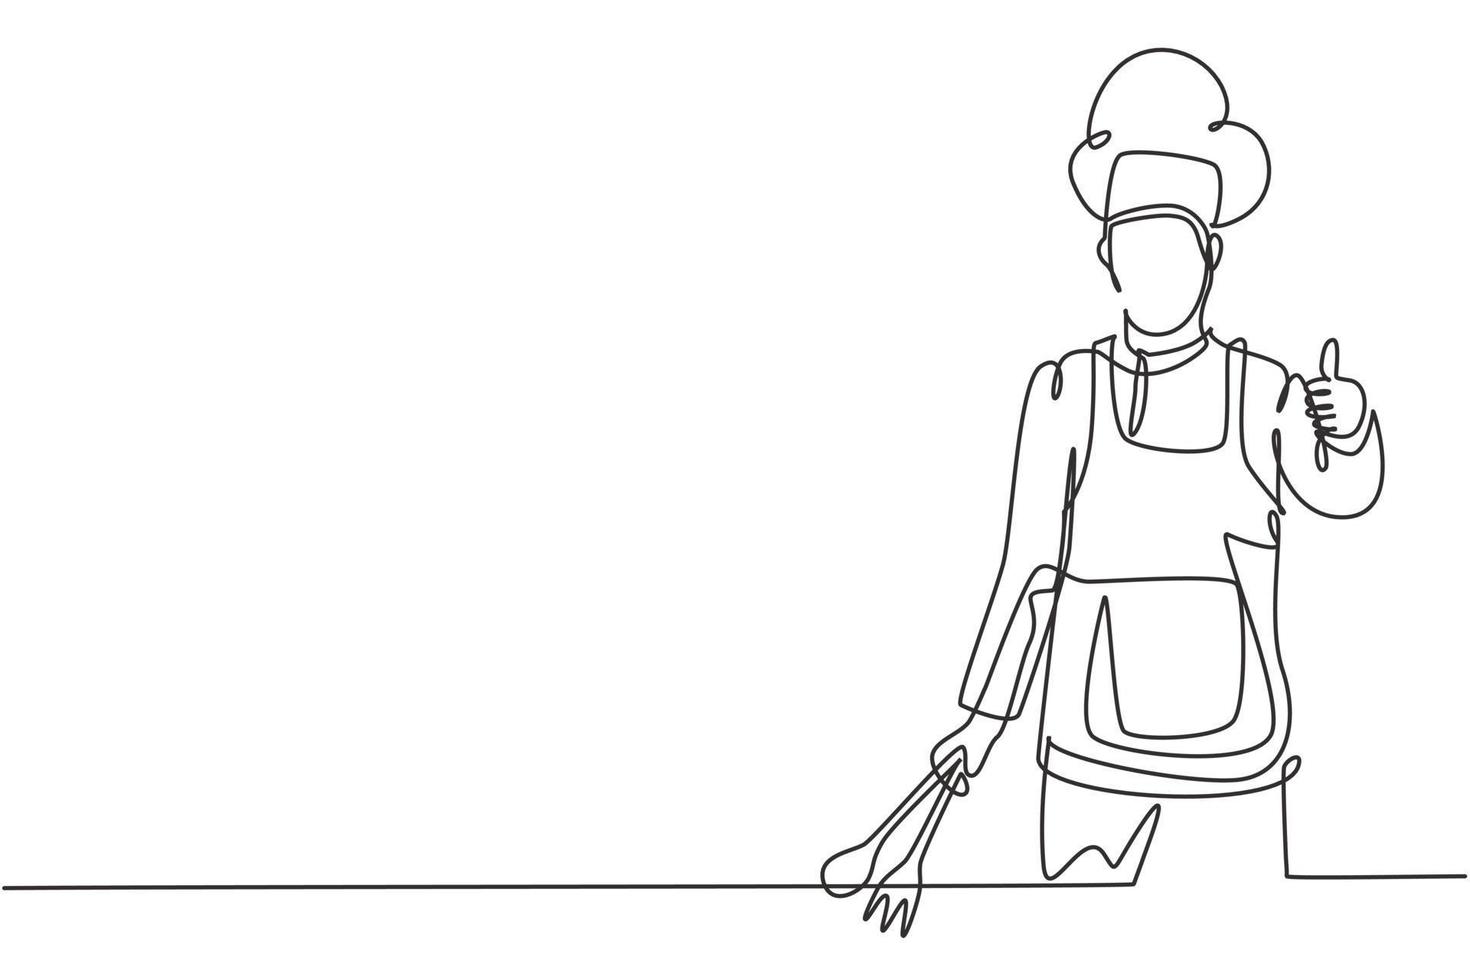 Um único desenho de linha do chef com gestos de polegar para cima e uniformes está pronto para preparar refeições para convidados em restaurantes famosos. moderna linha contínua desenhar design gráfico ilustração vetorial. vetor